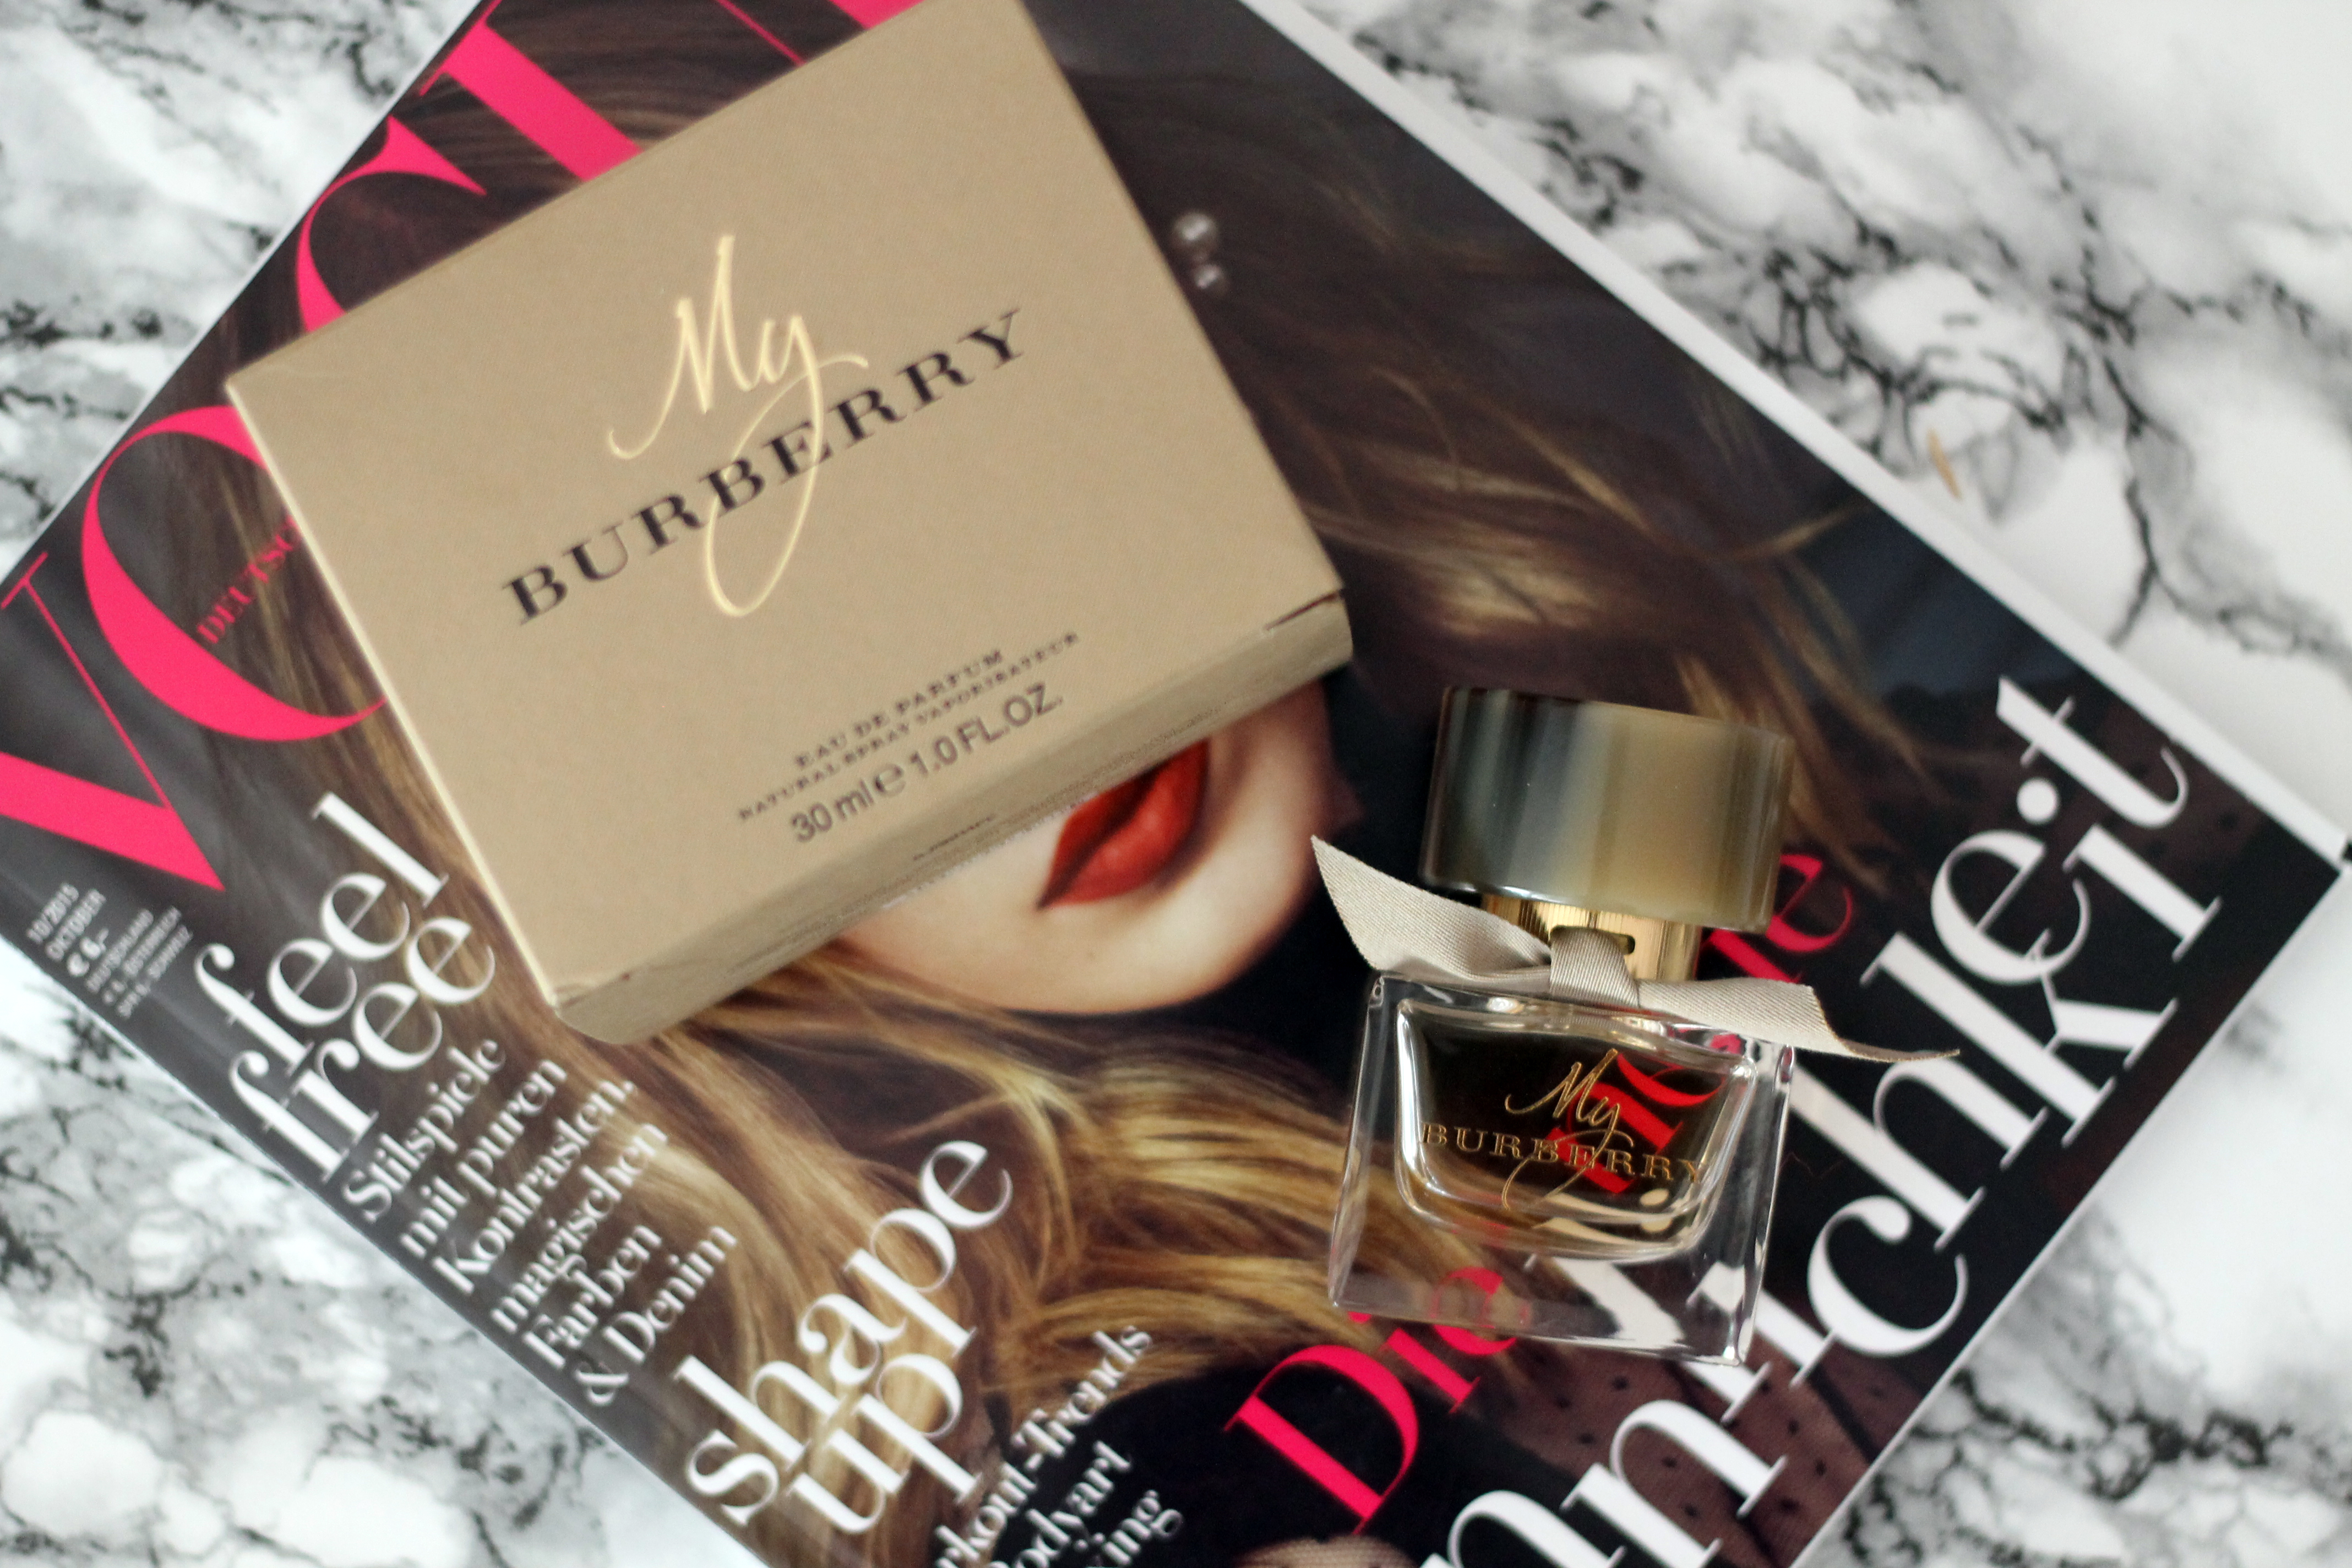 burberry-parfüm-duft-empfehlung-beautyblog-beauty-blogger-deutschland